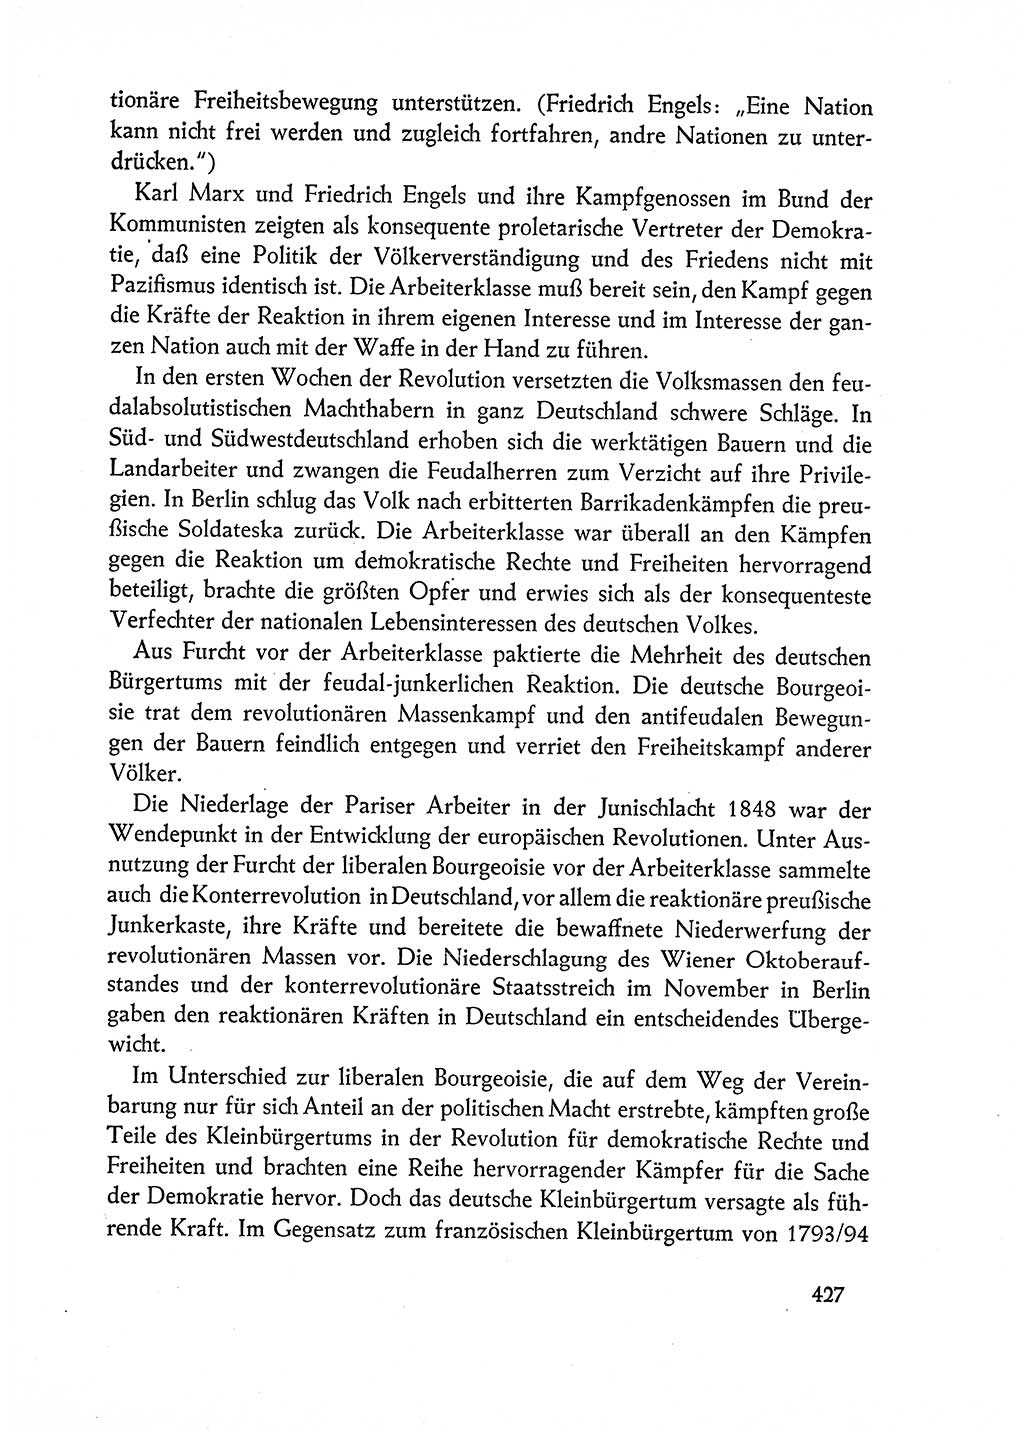 Dokumente der Sozialistischen Einheitspartei Deutschlands (SED) [Deutsche Demokratische Republik (DDR)] 1962-1963, Seite 427 (Dok. SED DDR 1962-1963, S. 427)